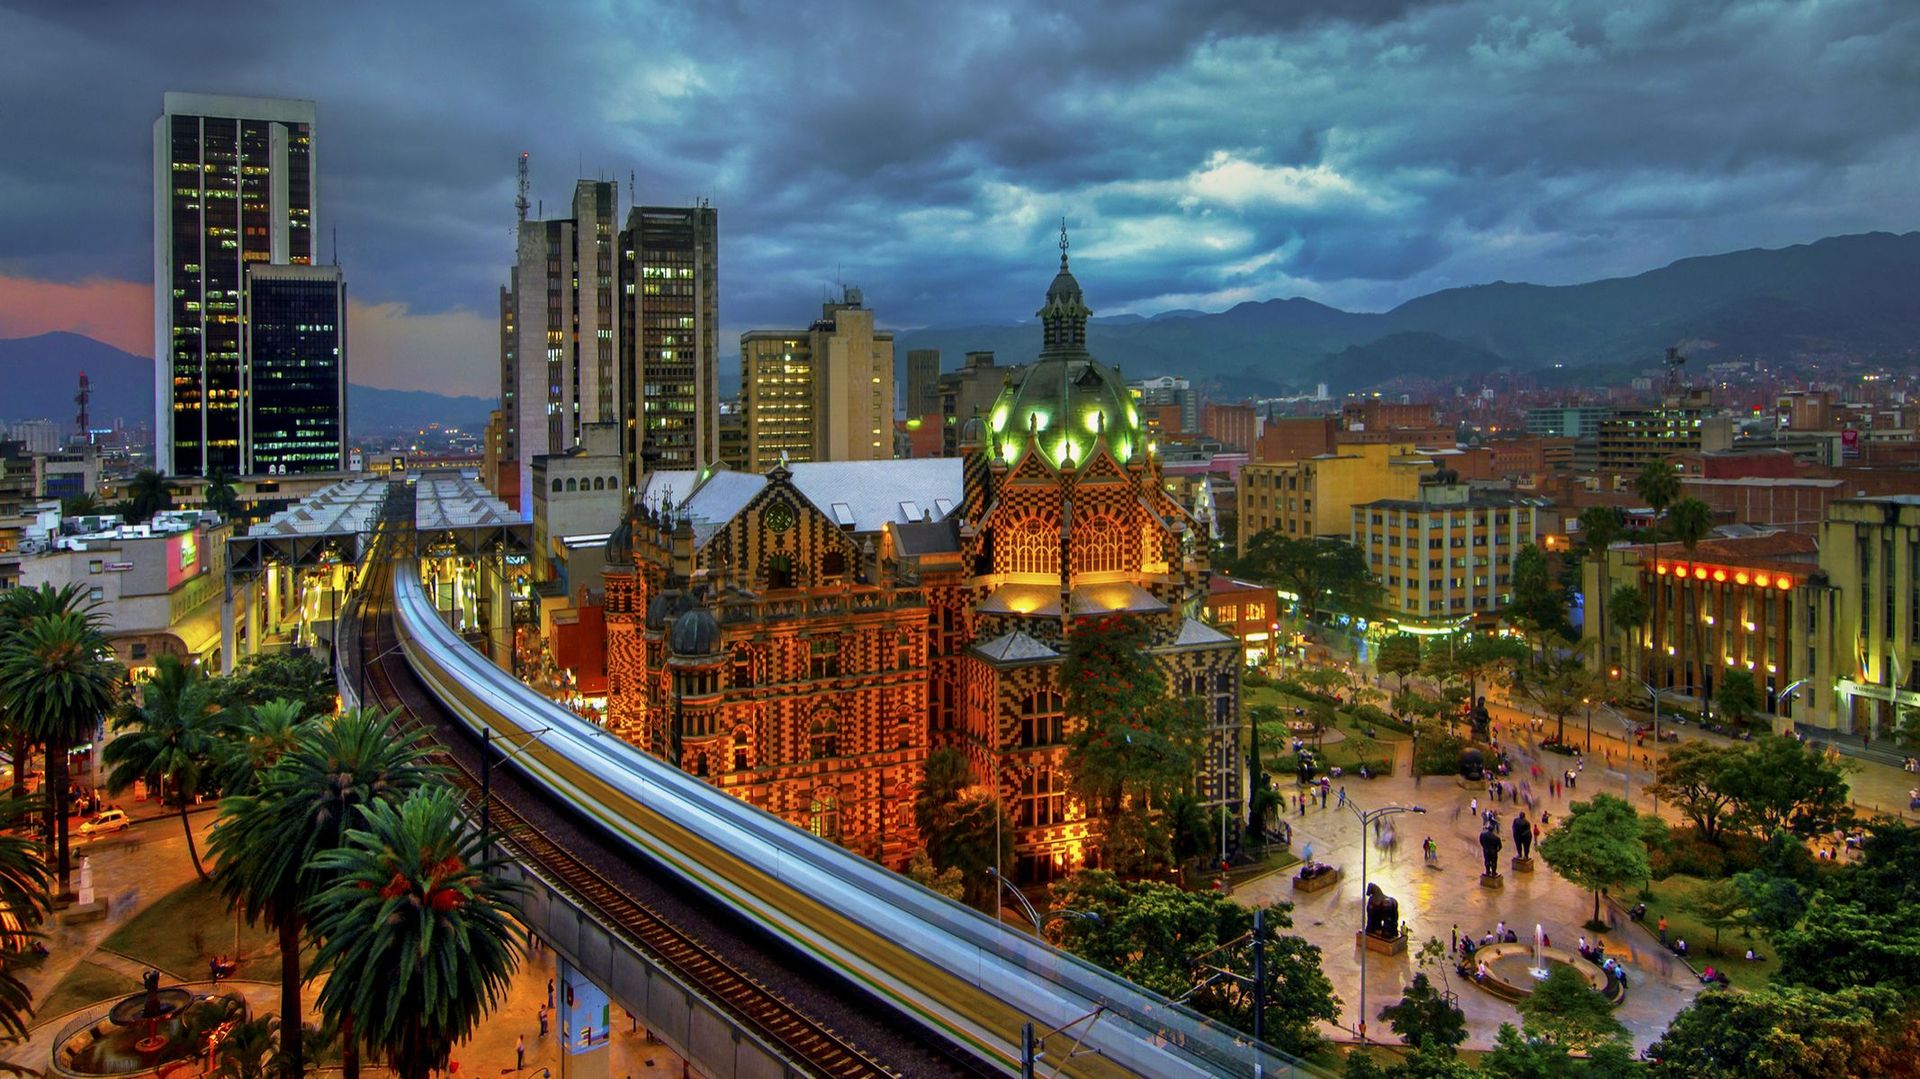 Après avoir été le siège du cartel de drogue du trafiquant Pablo Escobar pendant de nombreuses années, Medellin est aujourd’hui reconnue pour être l’exemple parfait d’une ville du quart d’heure.